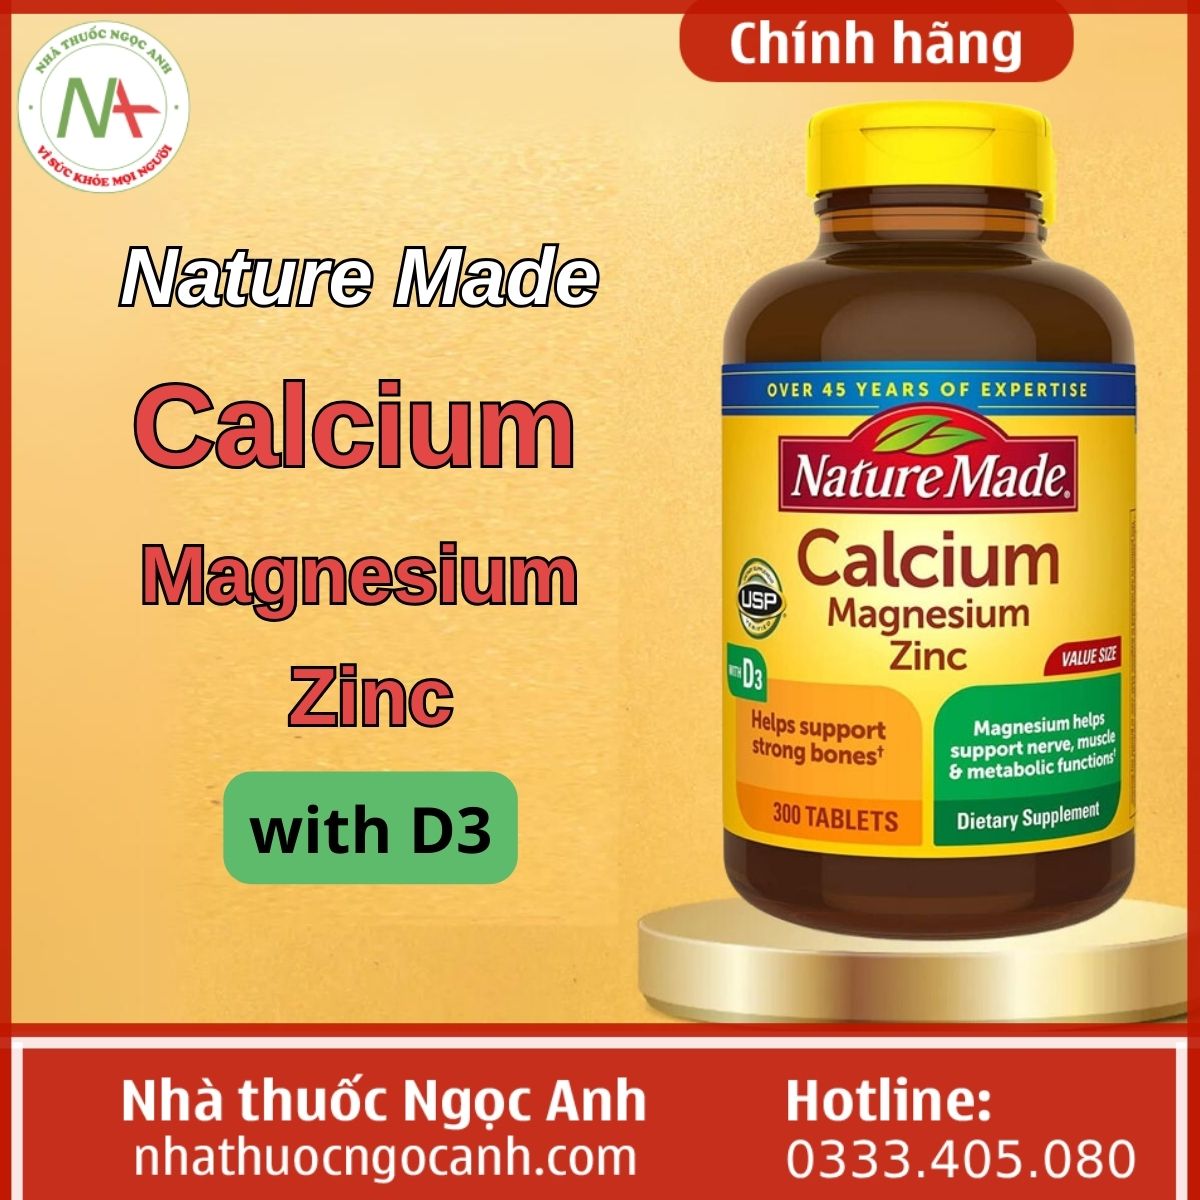 Nature Made Calcium Magnesium Zinc with D3